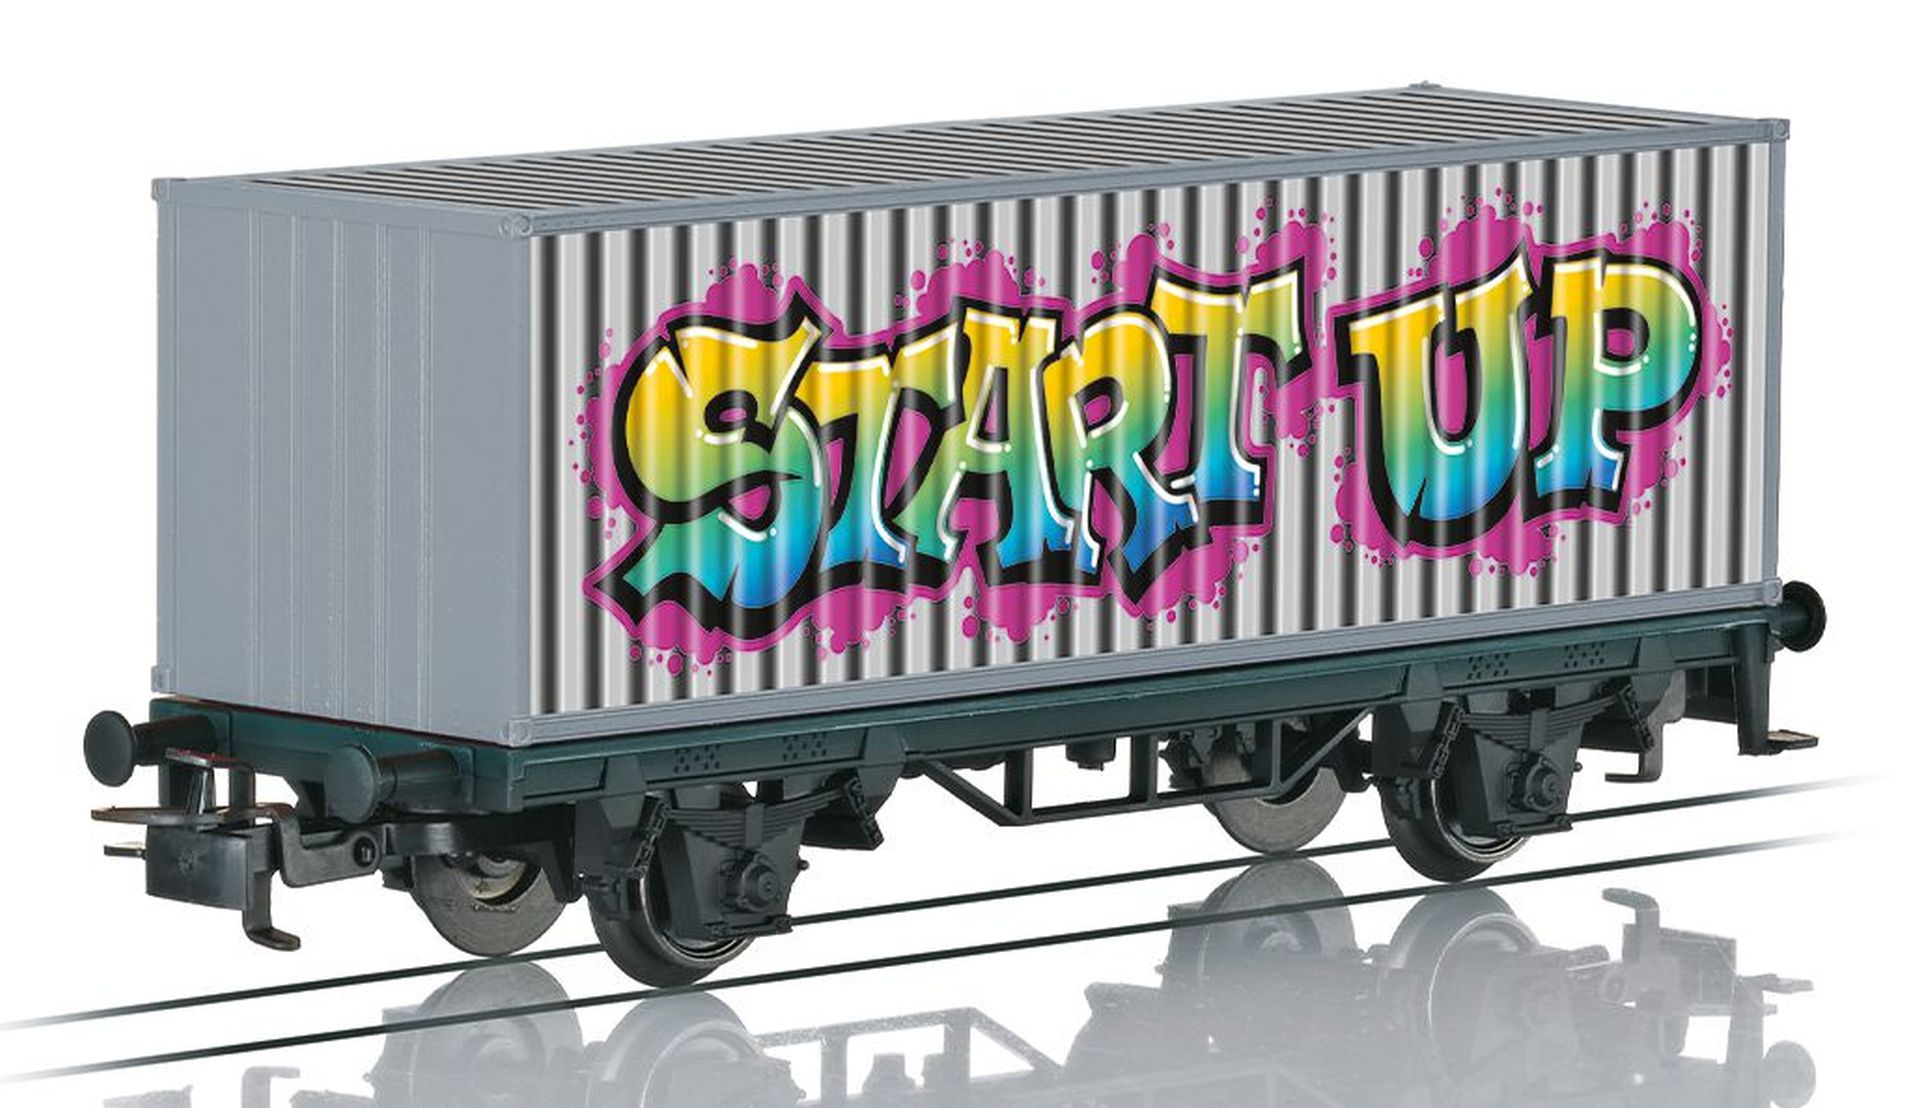 Märklin 44831 - Containerwagen 'Graffiti', Ep.VI